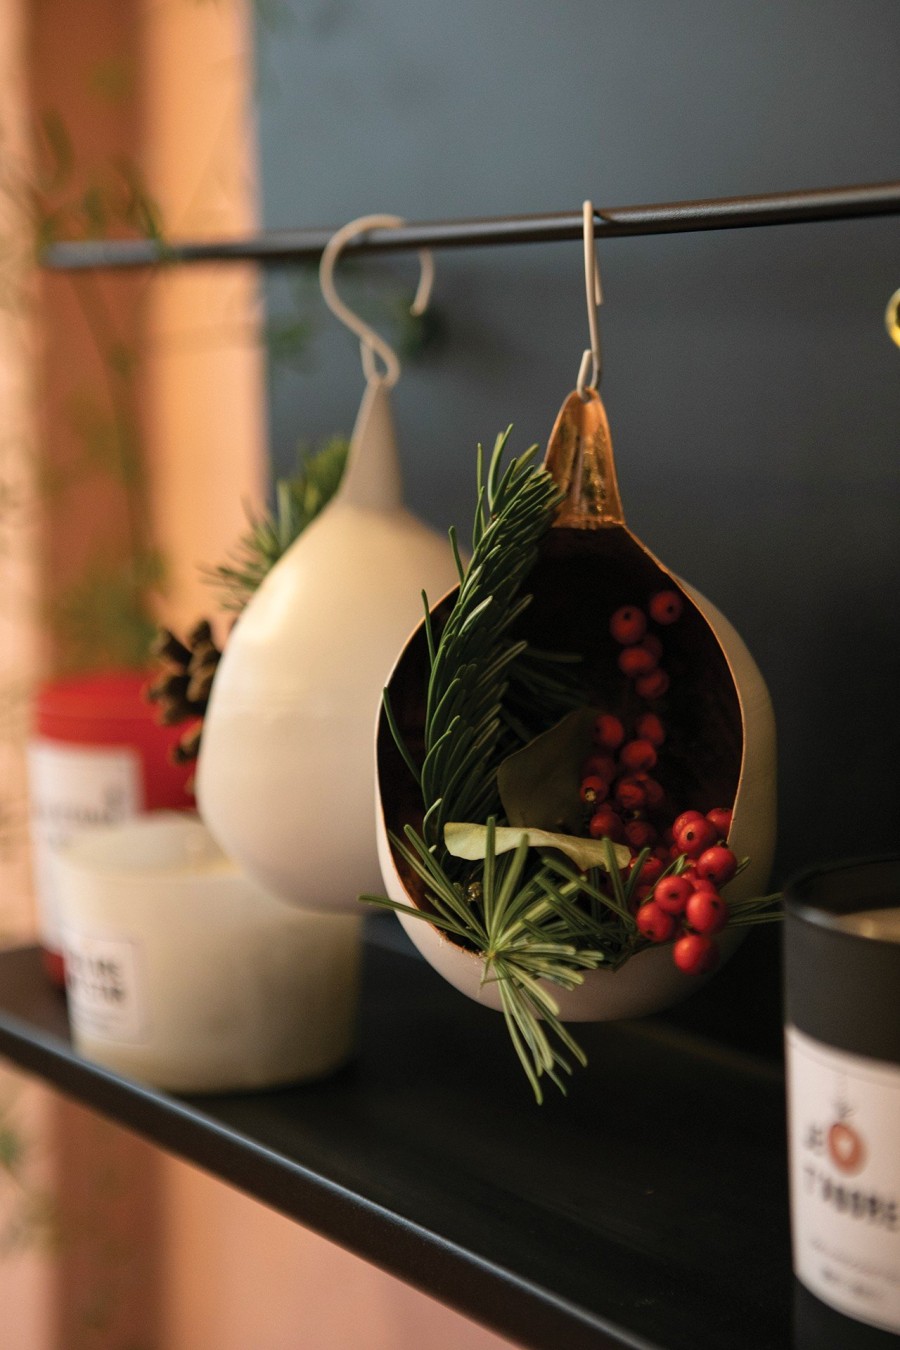 Η Βερόνικα Παλαιοκρασσά δημιουργεί το πιο cozy Xmas σκηνικό δίνοντάς μας ιδέες για ένα afternoon tea με χριστουγεννιάτικη ατμόσφαιρα - Φωτογραφία 5